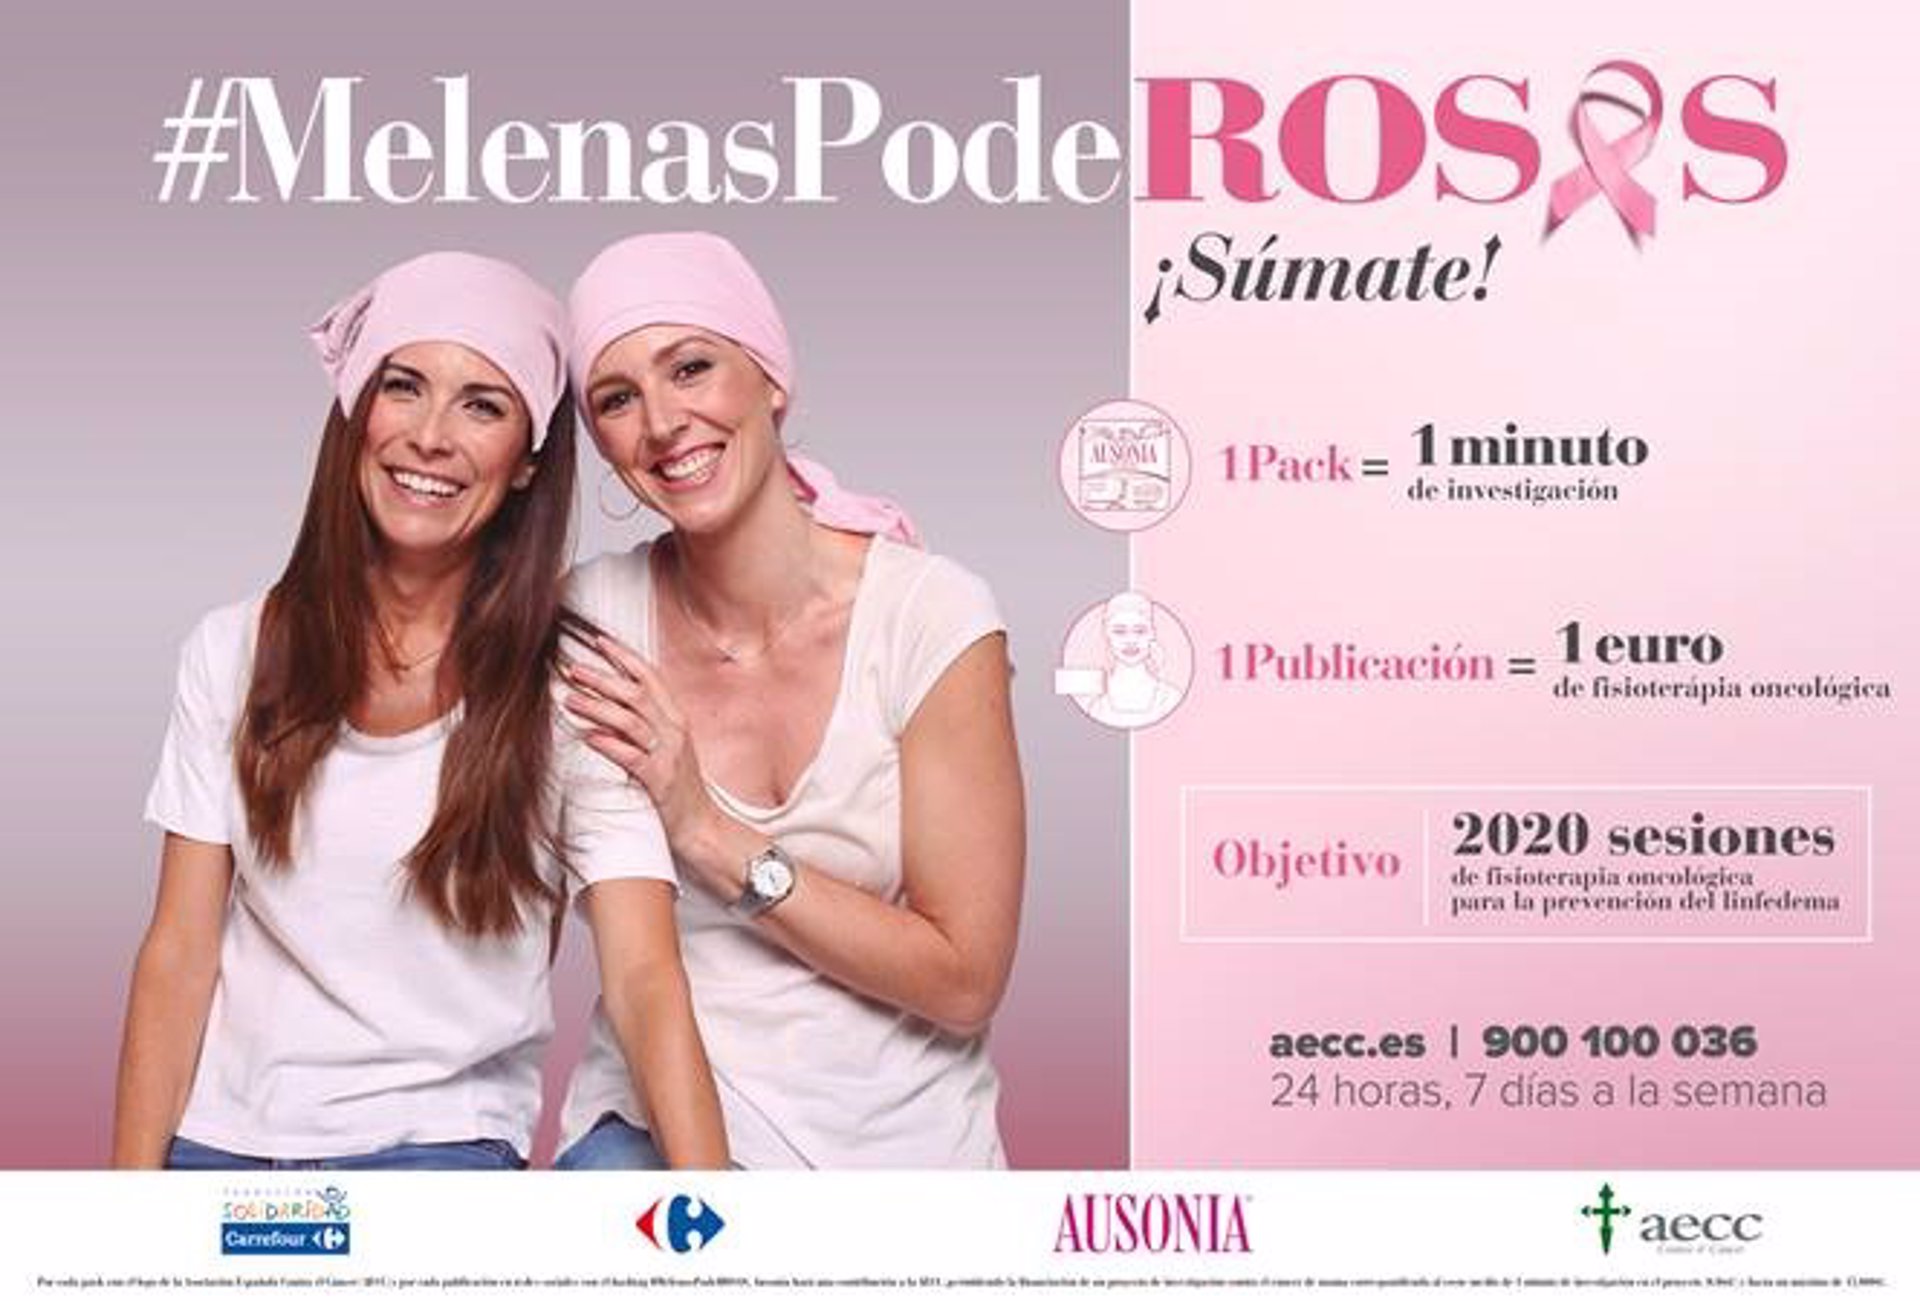 Cancer de mama aeecc - Cuarta edición de la campaña '#MelenasPodeRosas' en favor de la AECC